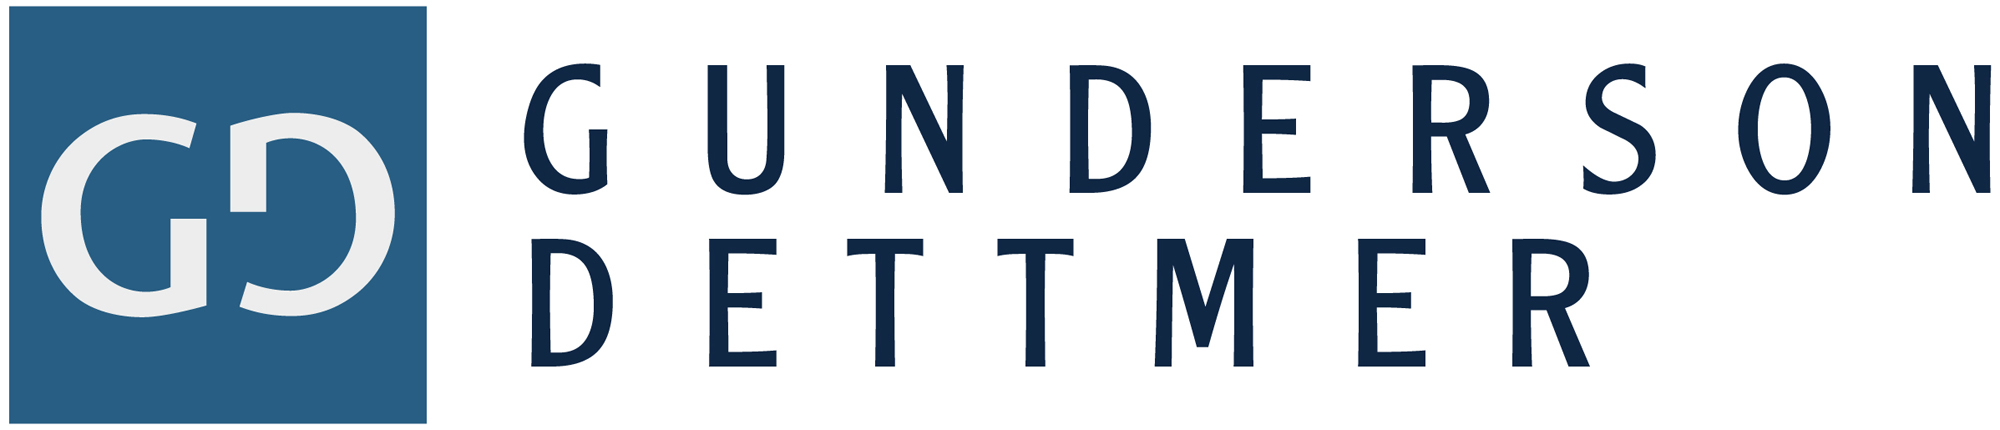 Gunderson Dettmer logo